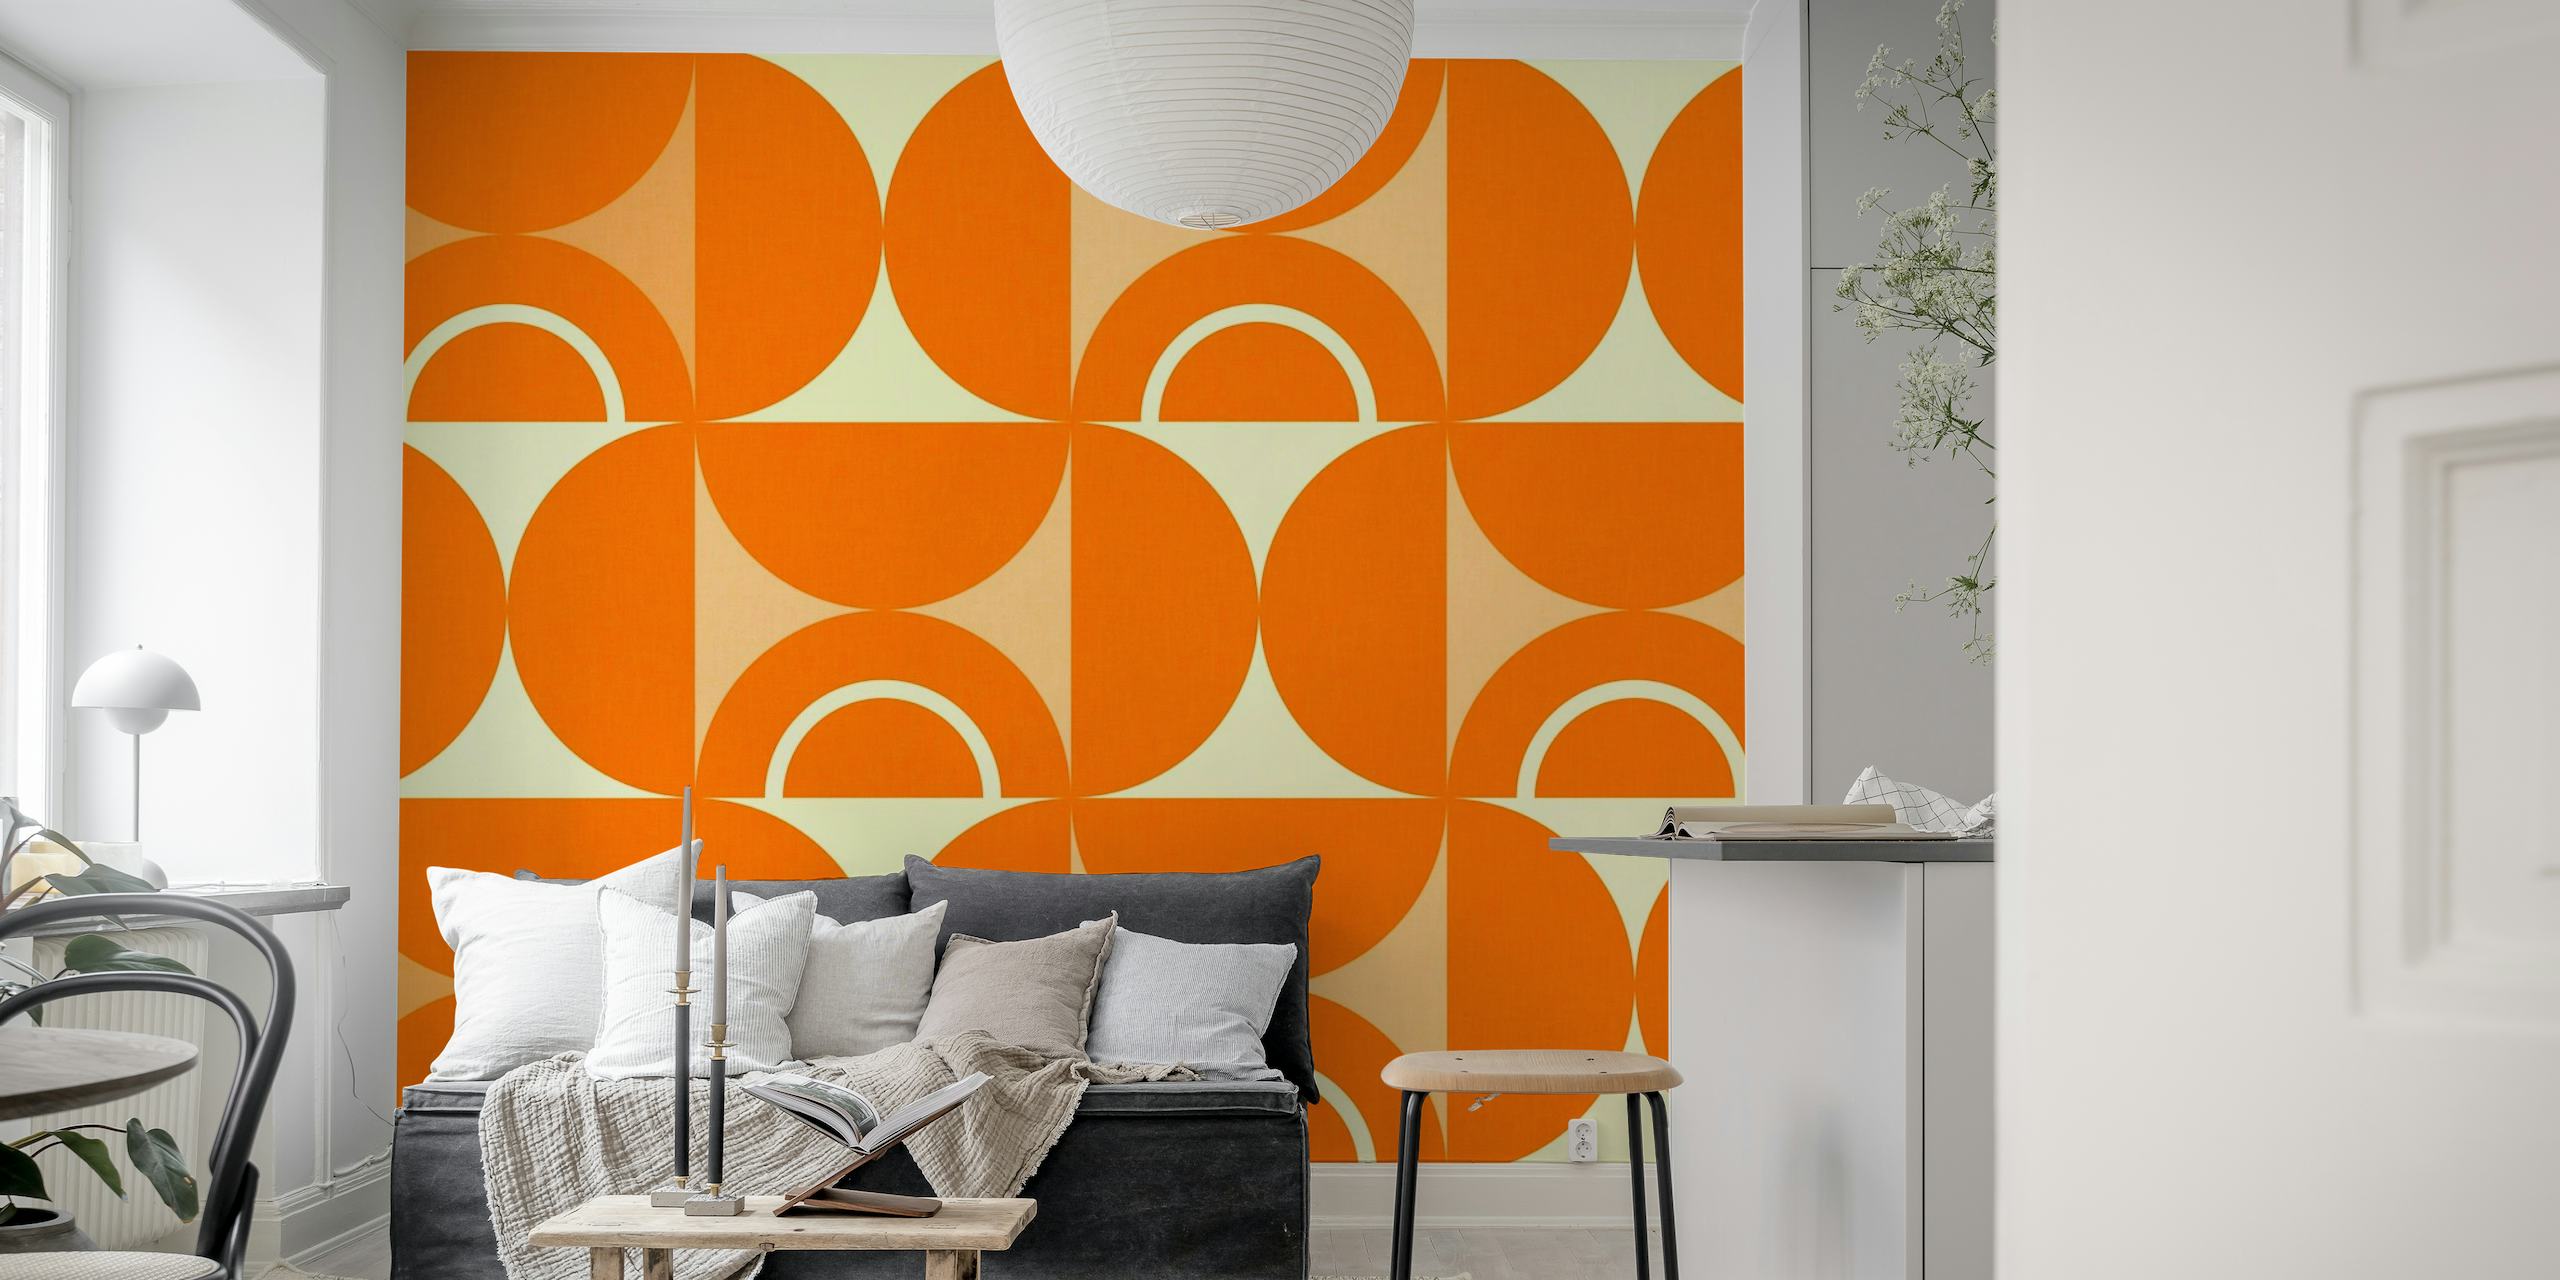 Moderní geometrický vzor z poloviny století v oranžové a bílé na fototapetu